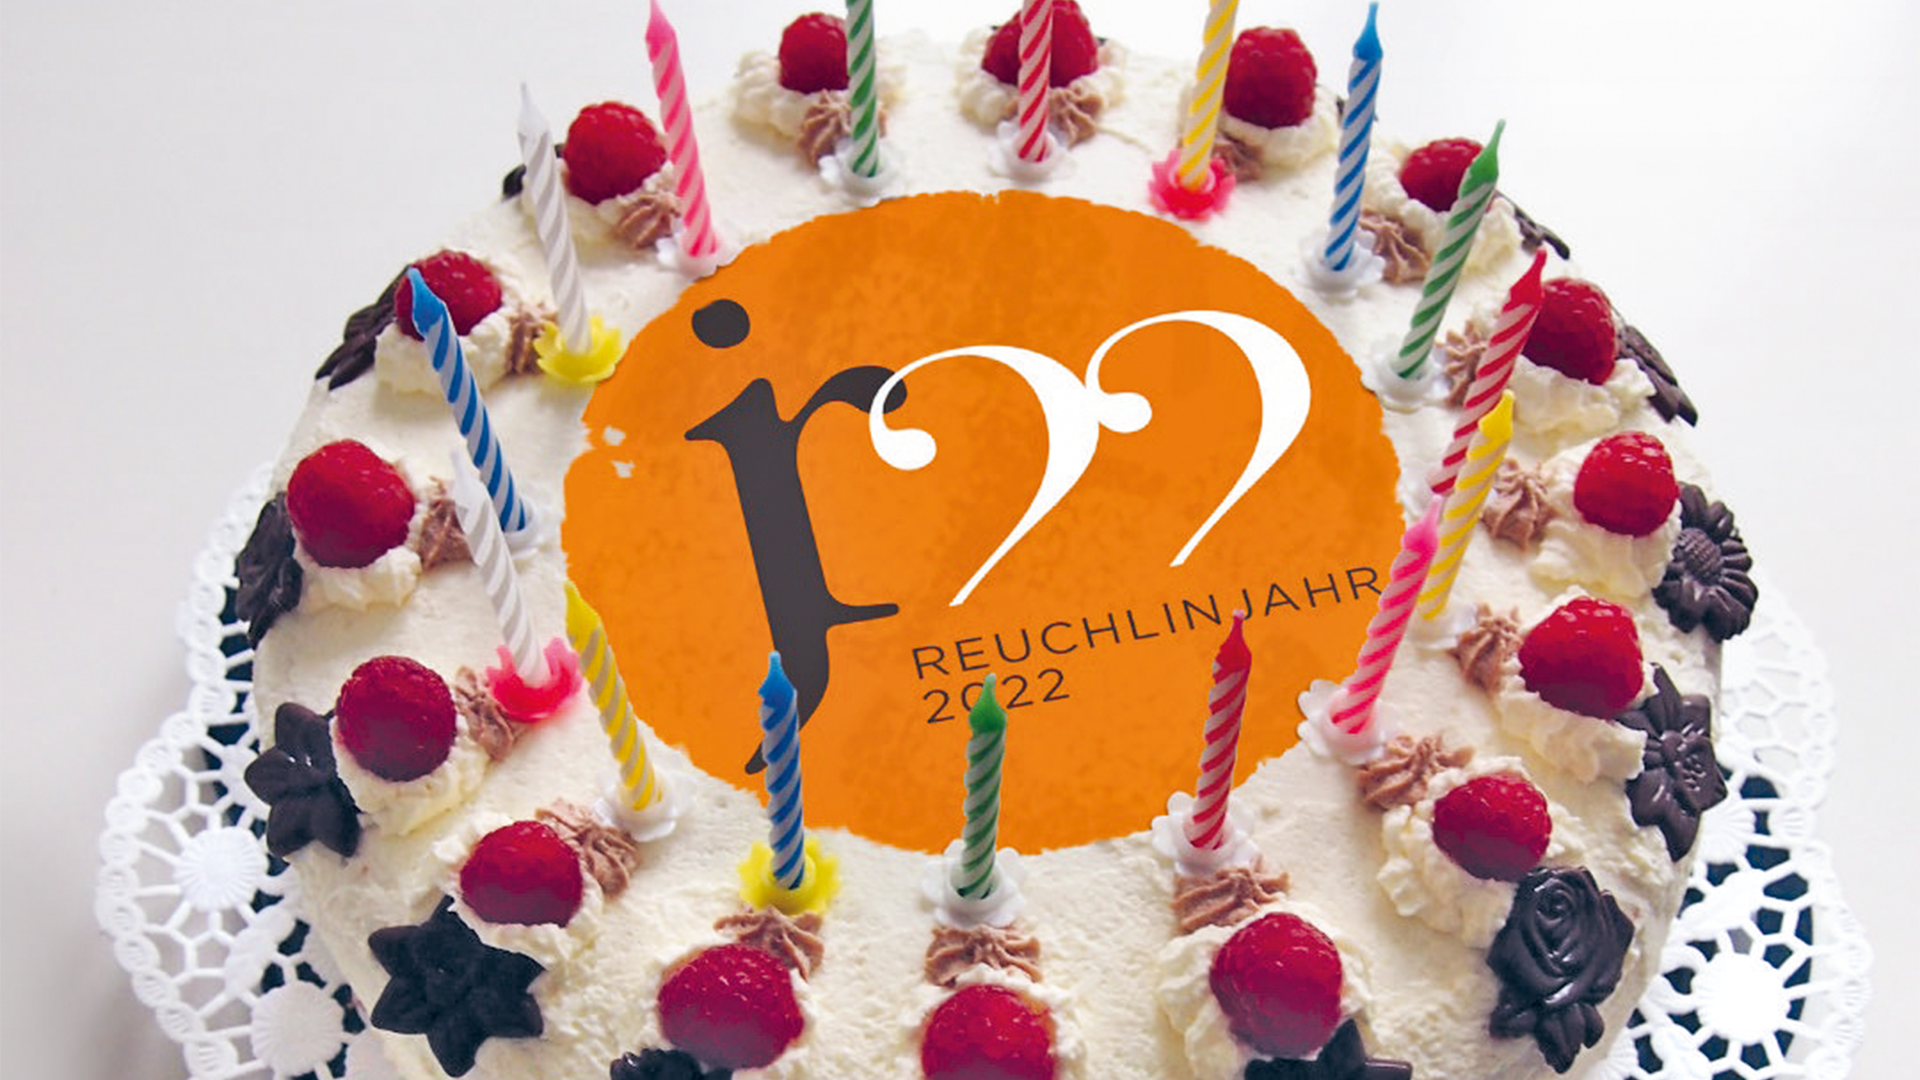 Geburtstagstorte mit Reuchlinjahr 2022-Logo